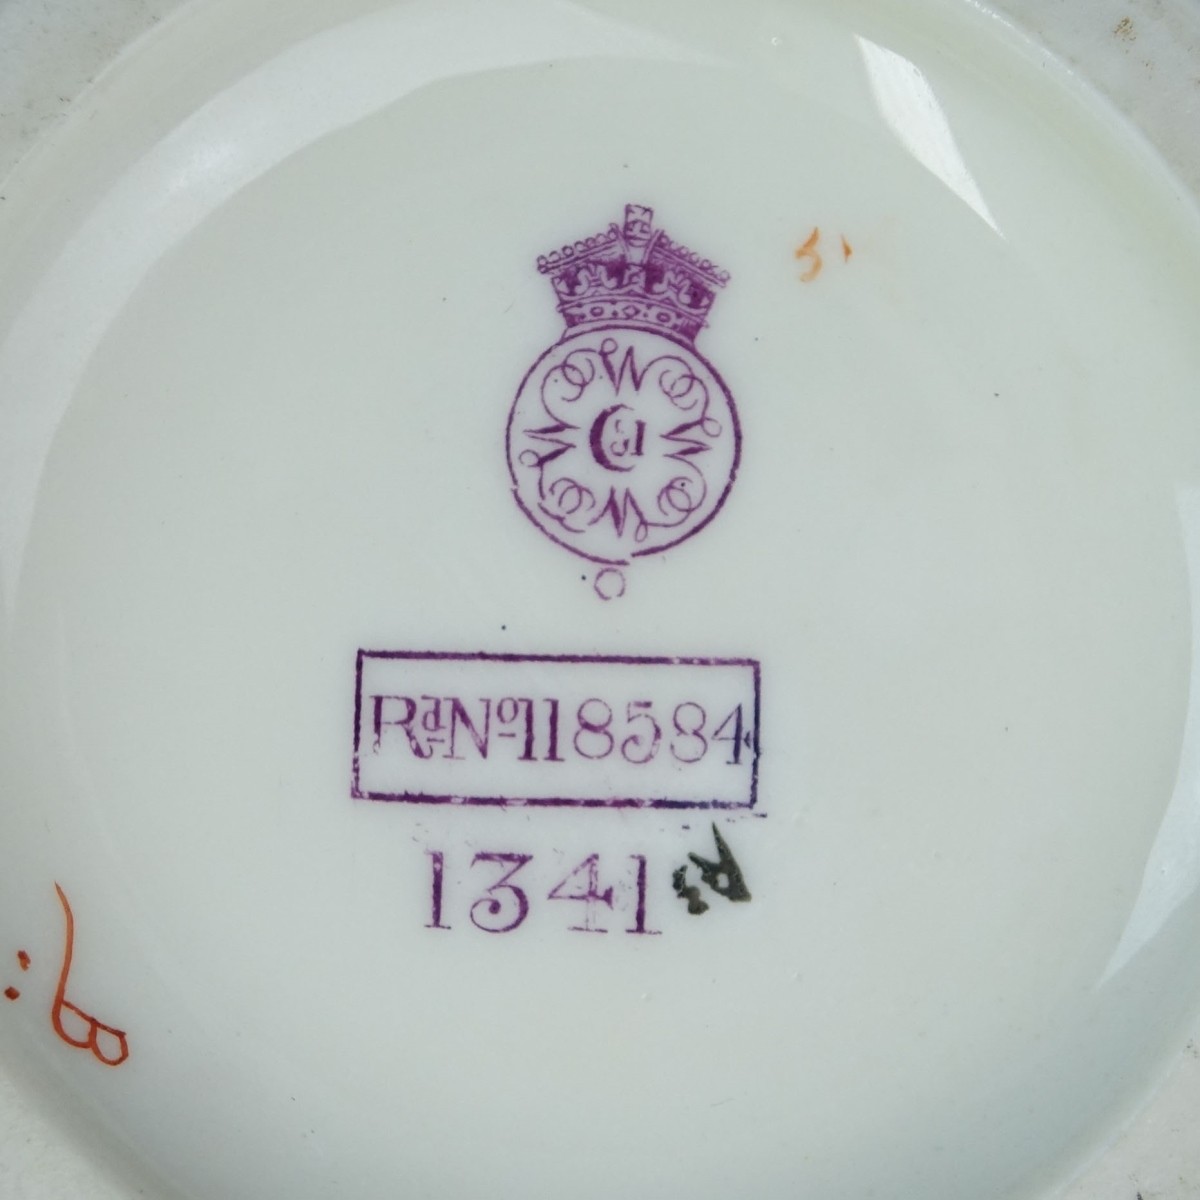 Royal Worcester Tableware